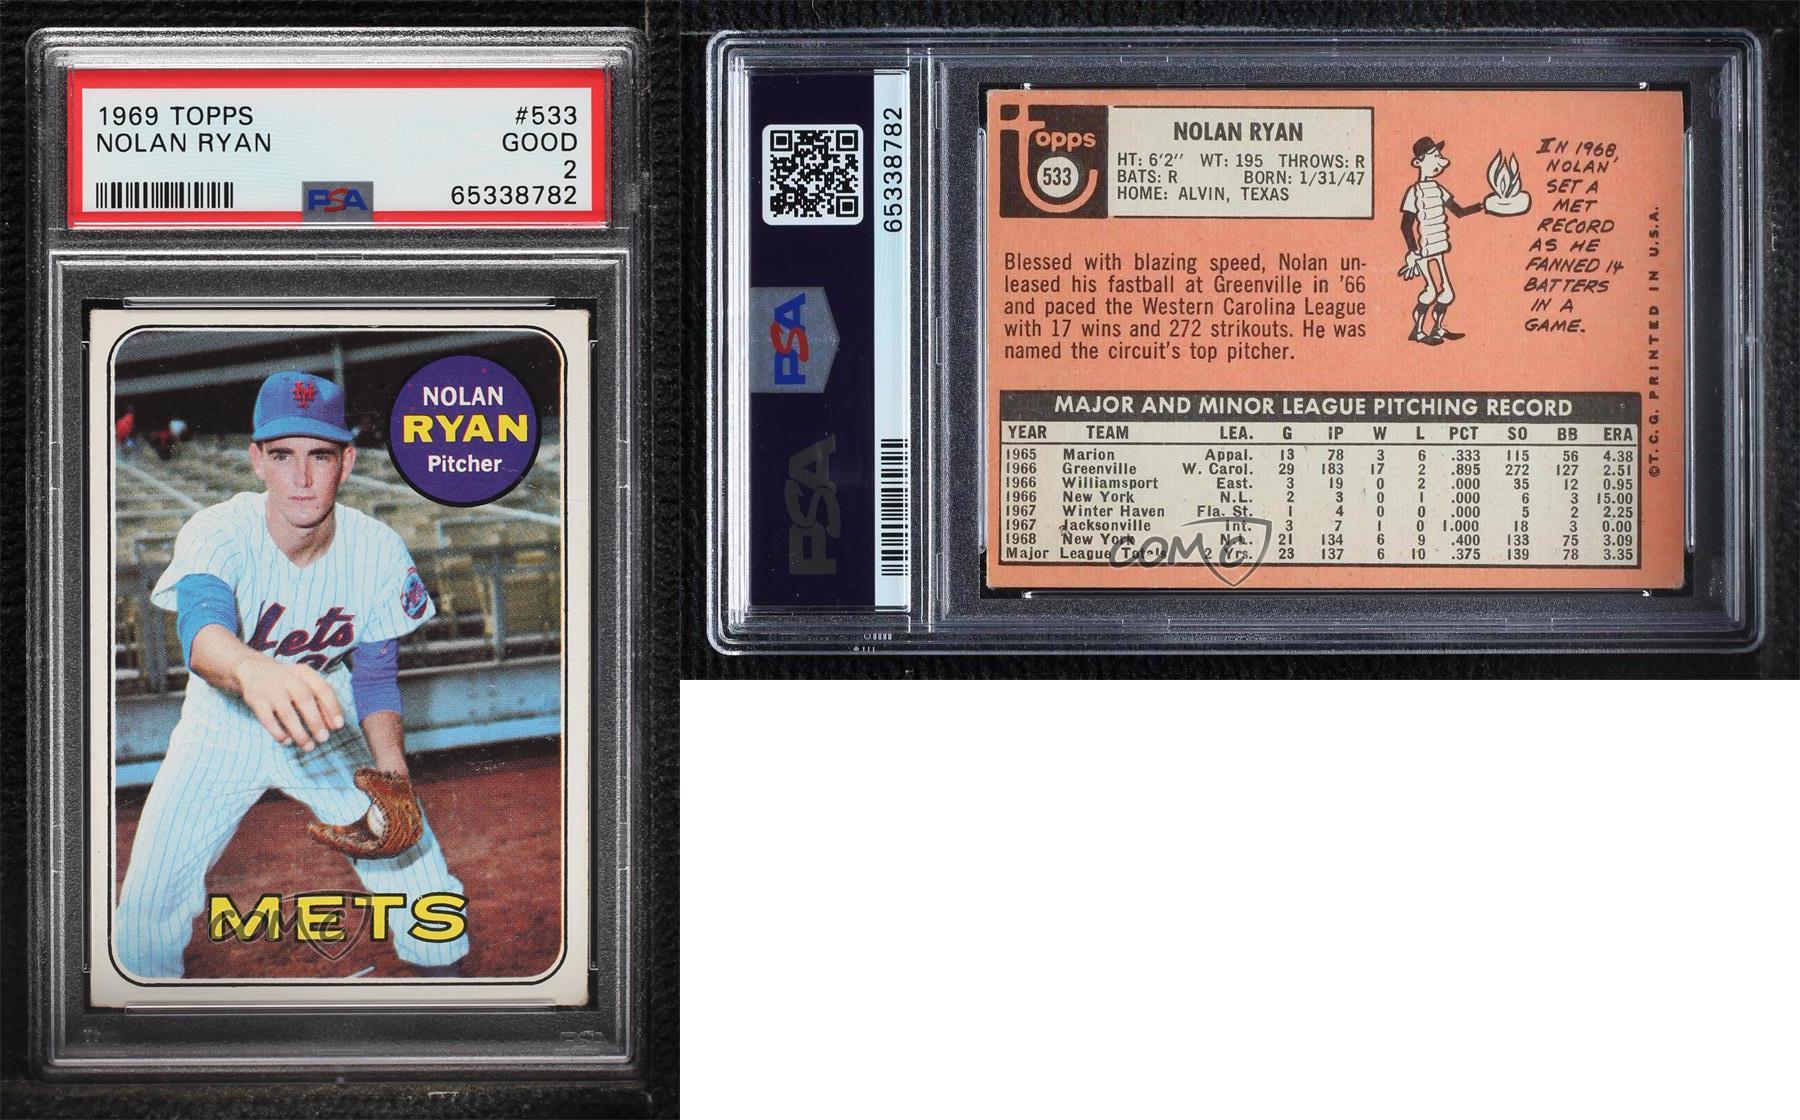  1969 Topps Regular (Baseball) card#533-psa Nolan Ryan